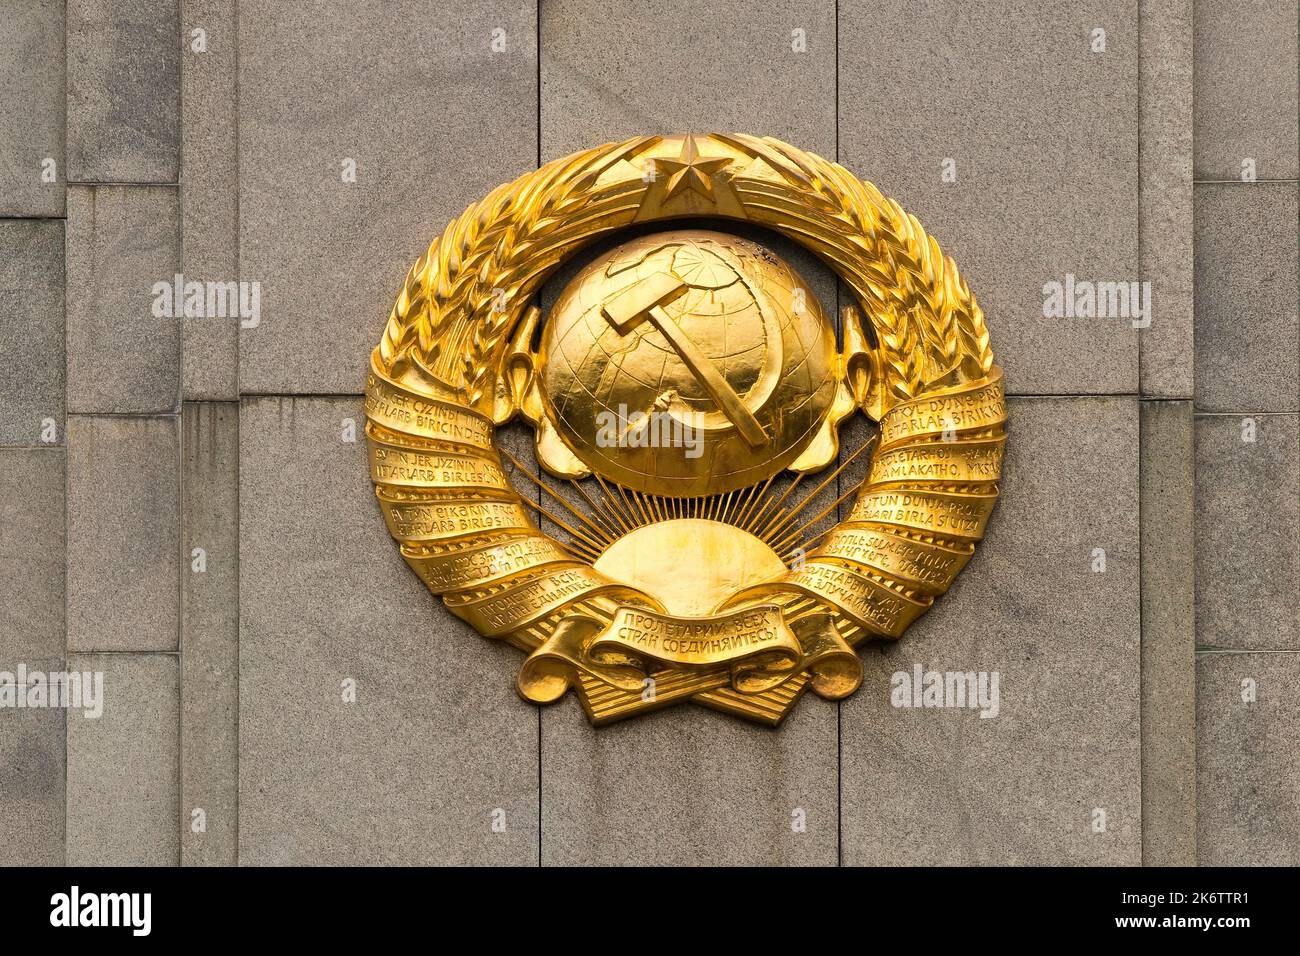 Armoiries d'or, détails, mémorial soviétique dans le Tiergarten, Berlin, Allemagne Banque D'Images